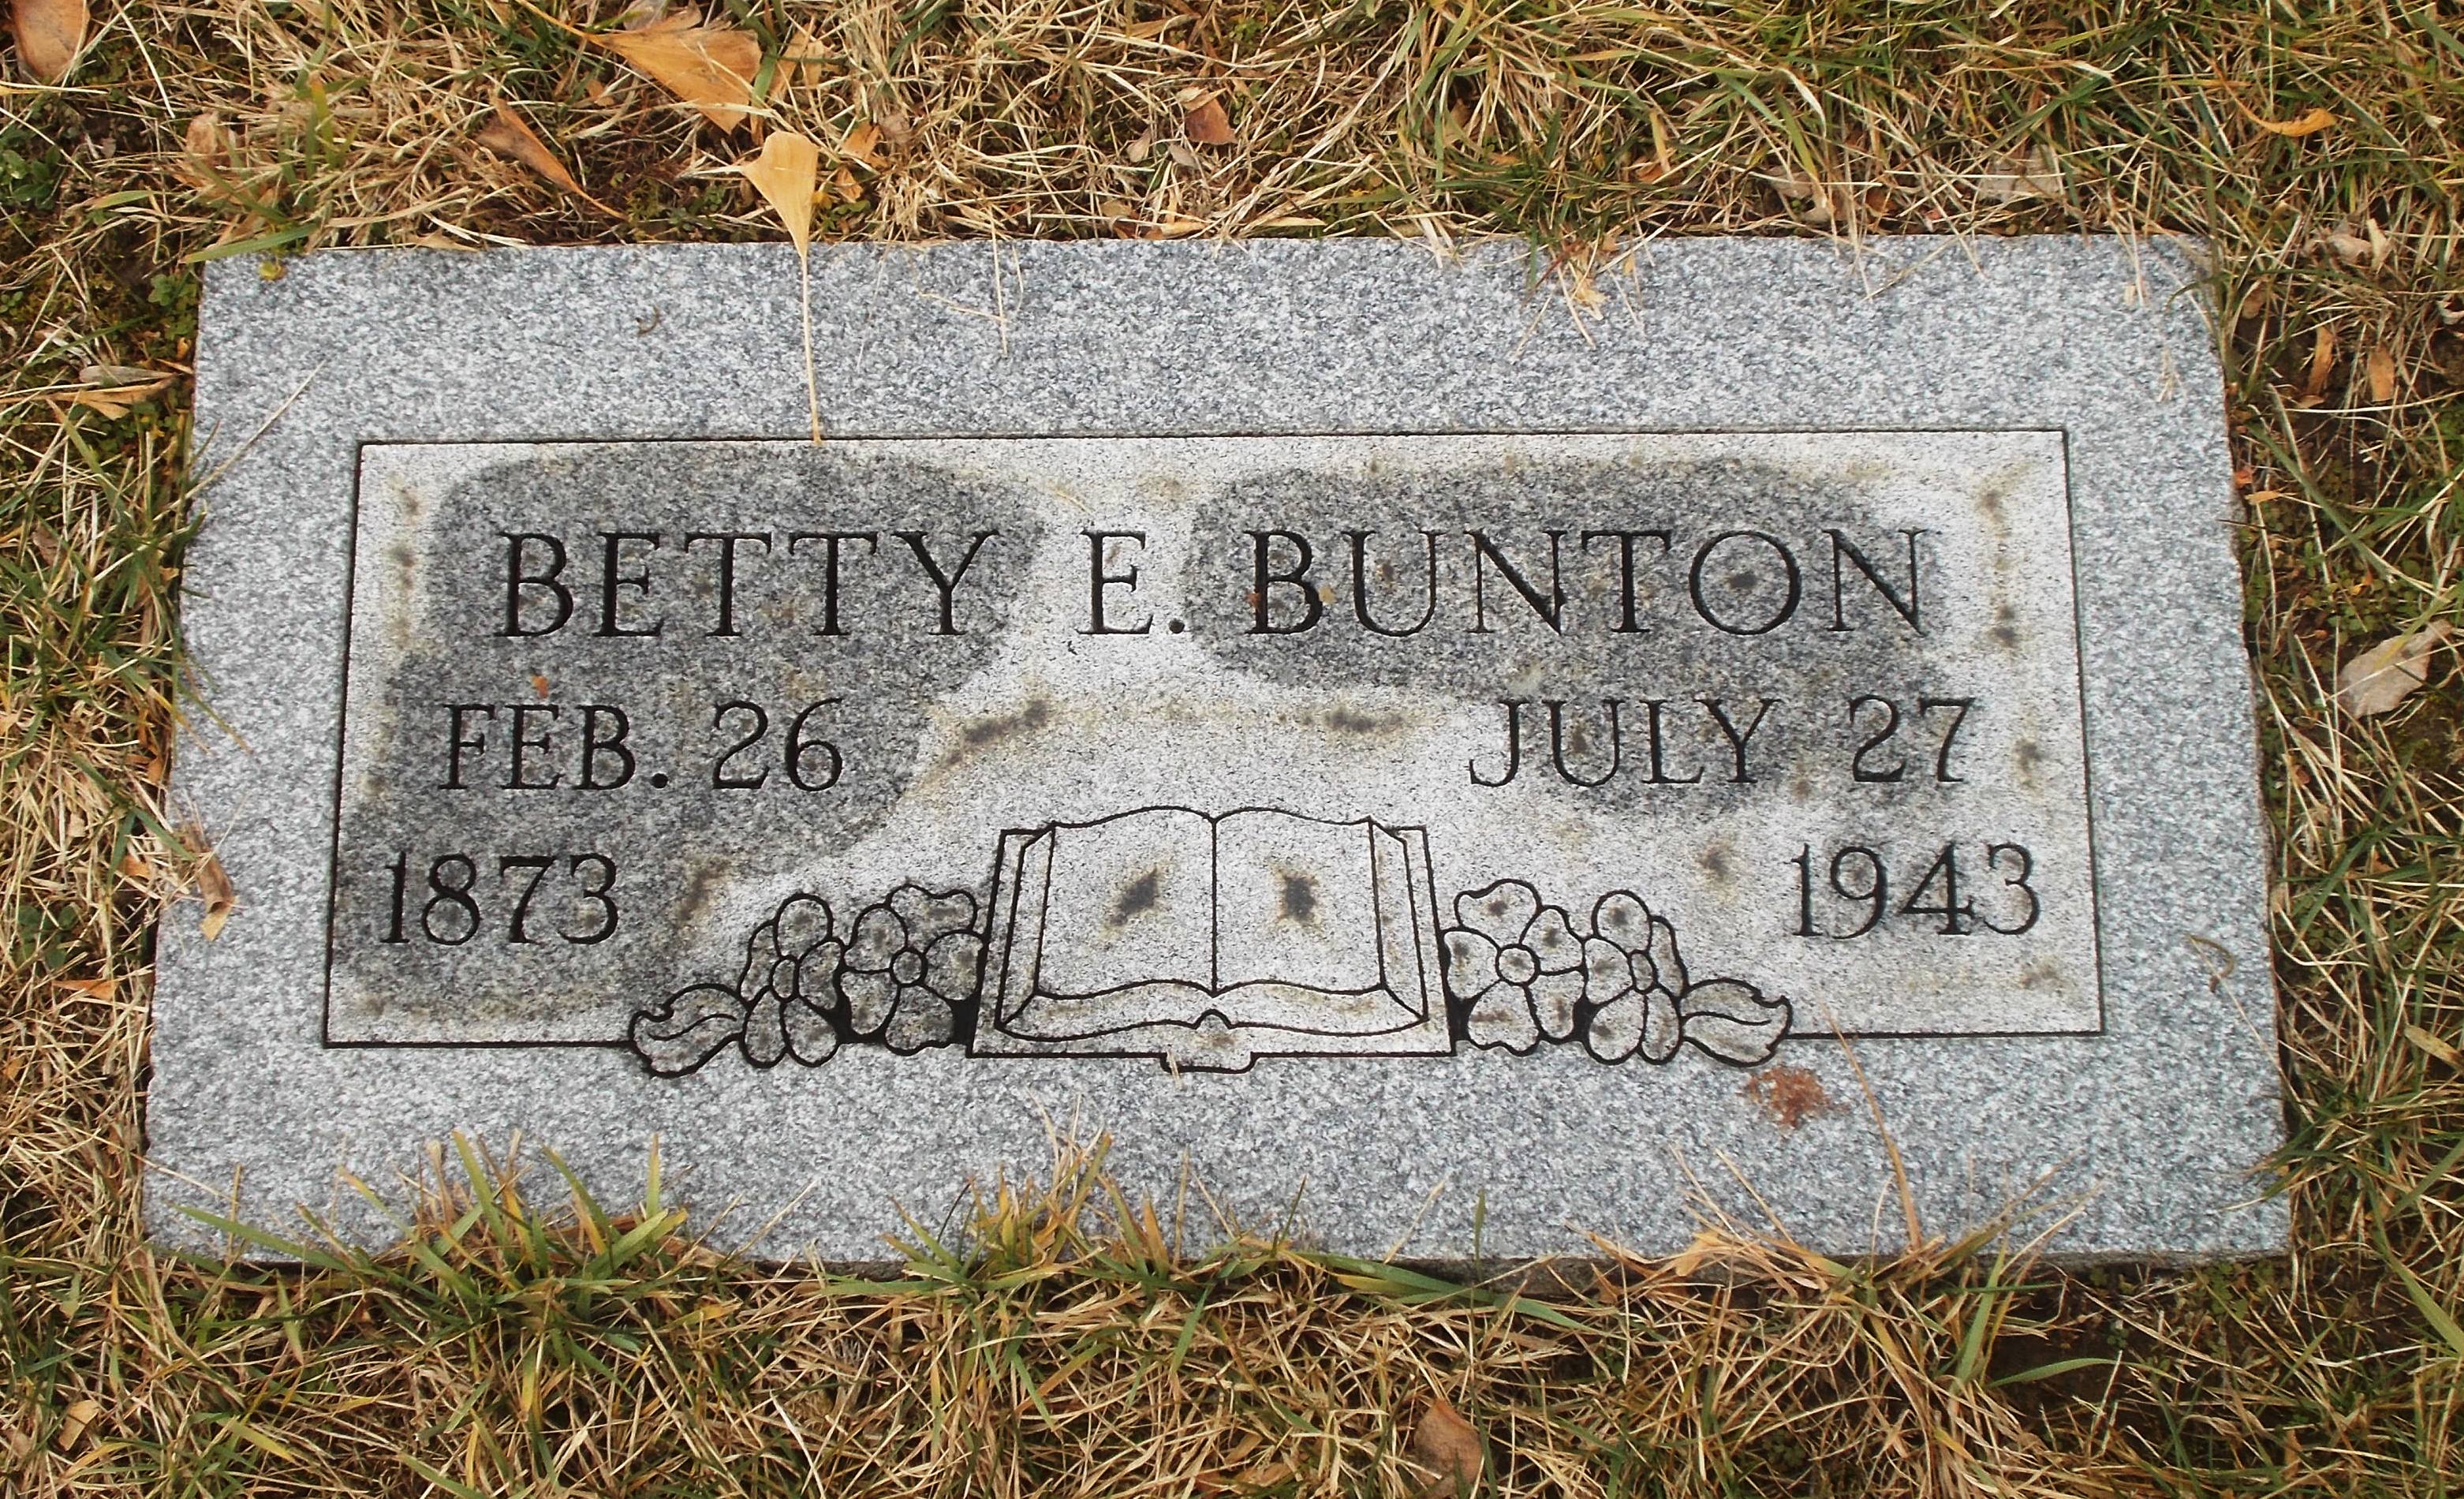 Betty E Bunton